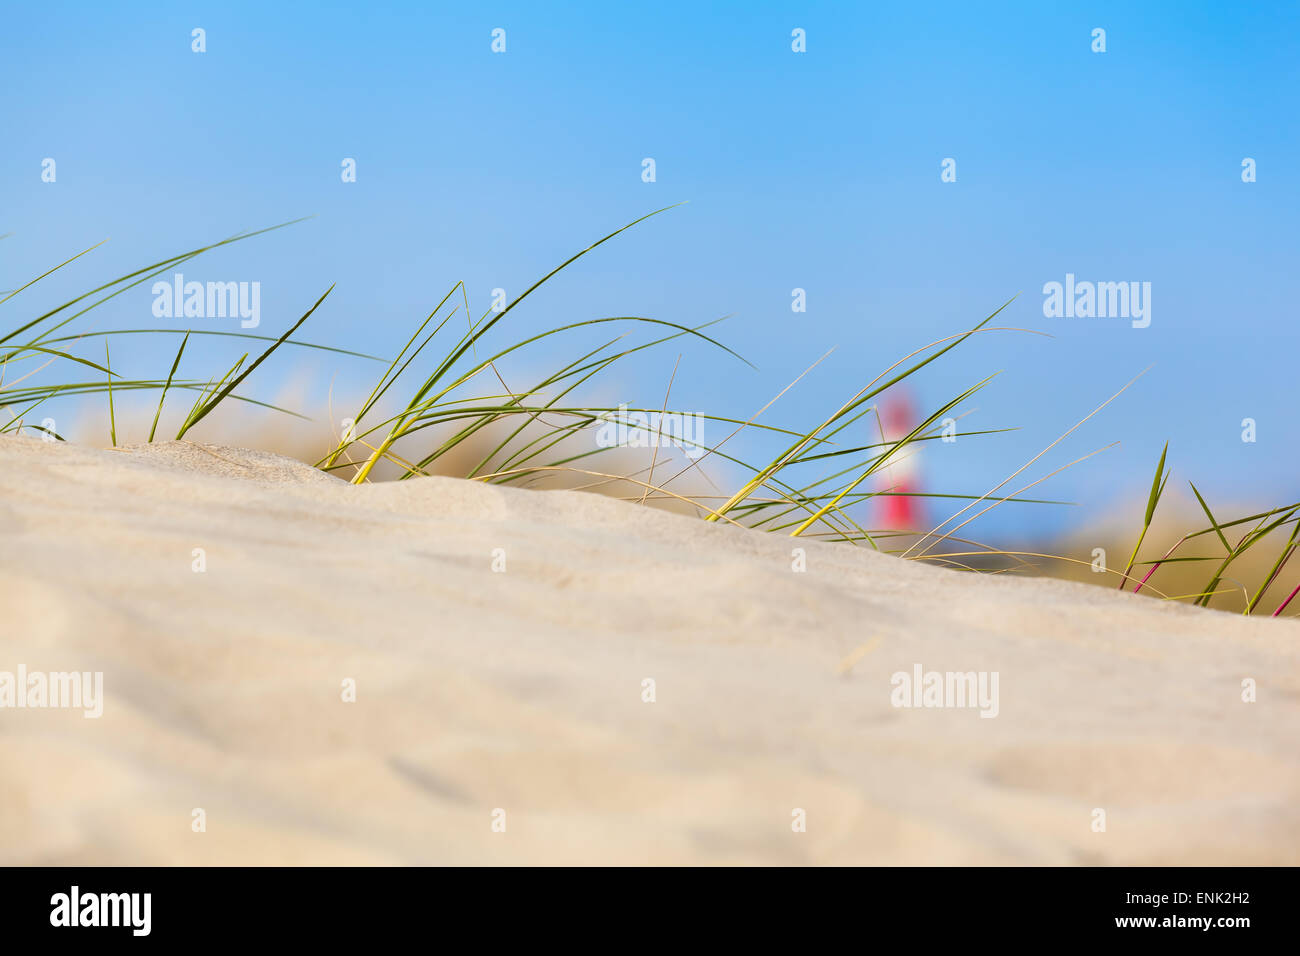 Sand Dune View - konzentriert Strand Sanddüne mit Rasen und einem weichen rot-weiß gestreifte Leuchtturm im Abstand Stockfoto